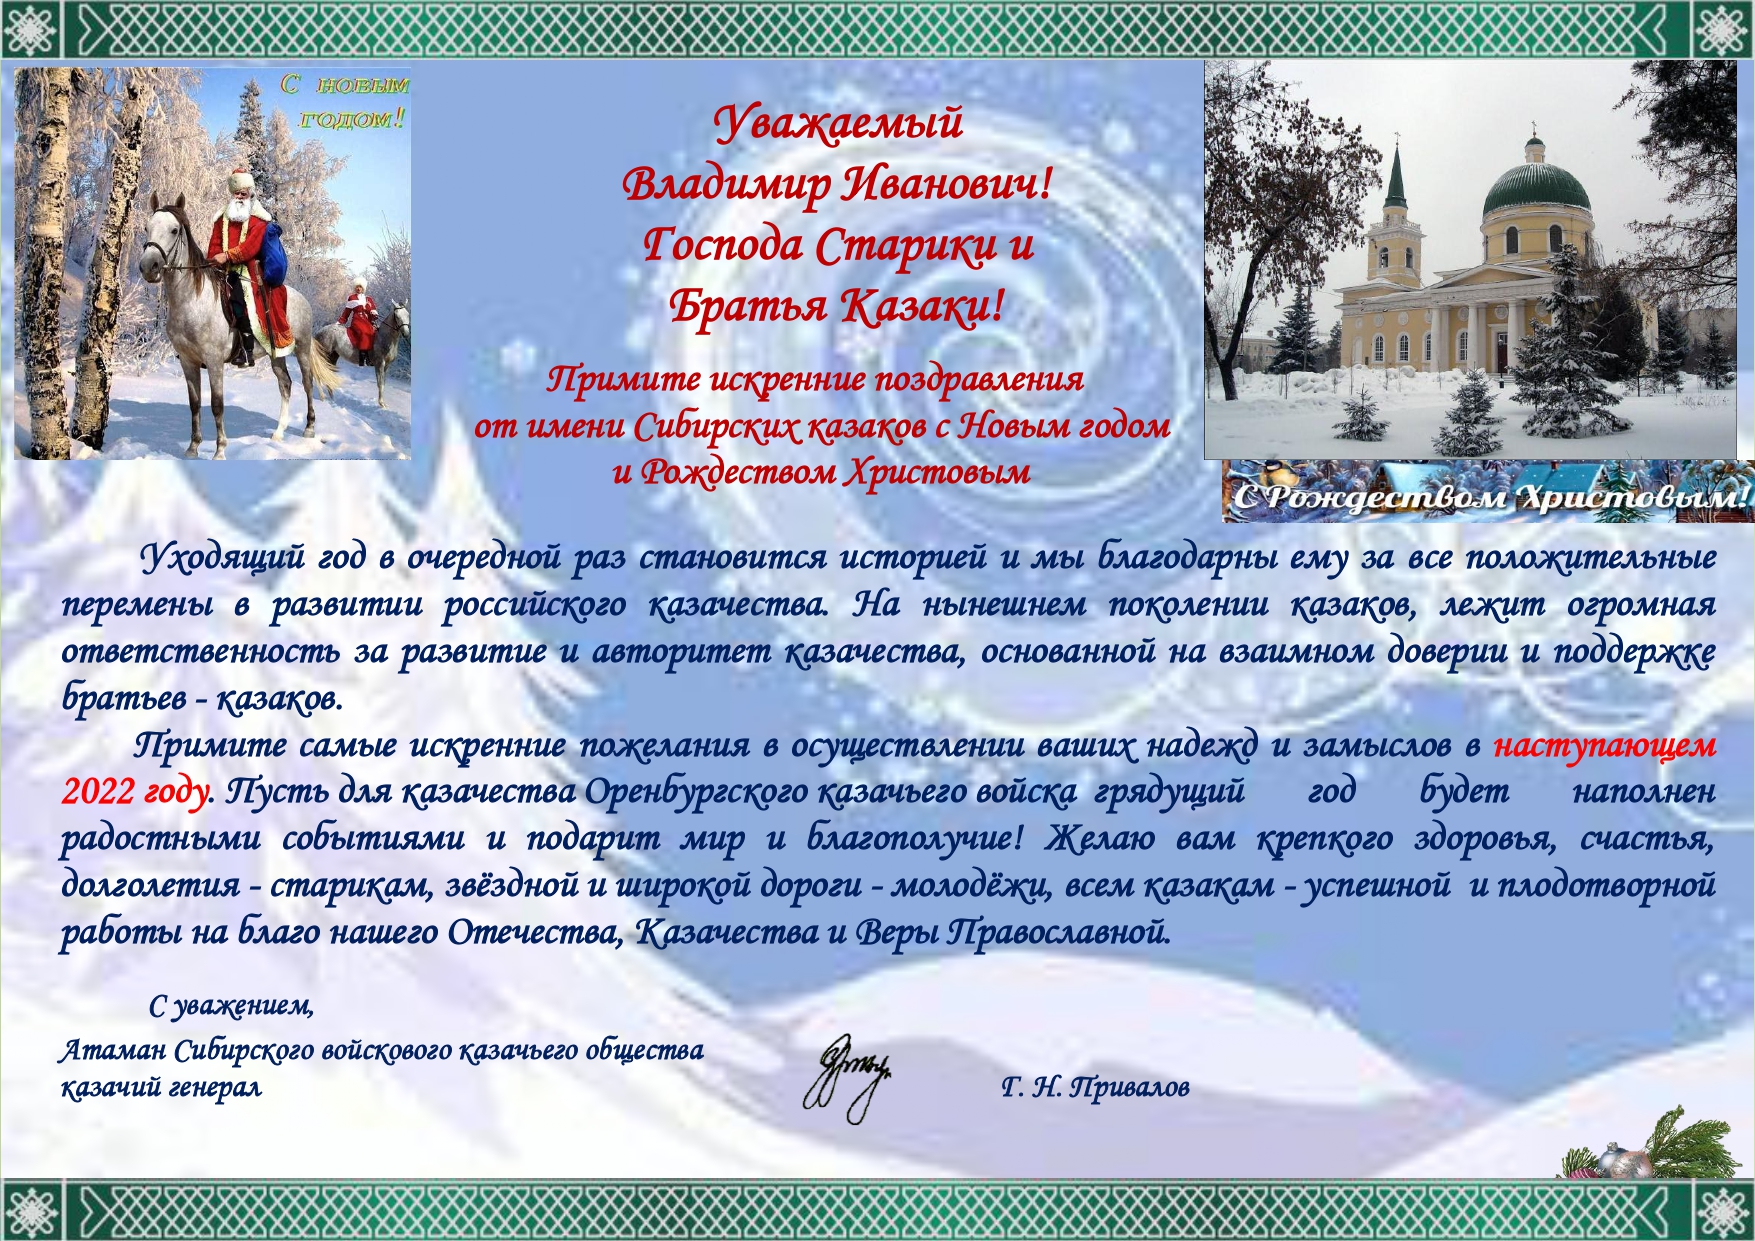 Поздравление с Новым годом от Г.Н. Привалова